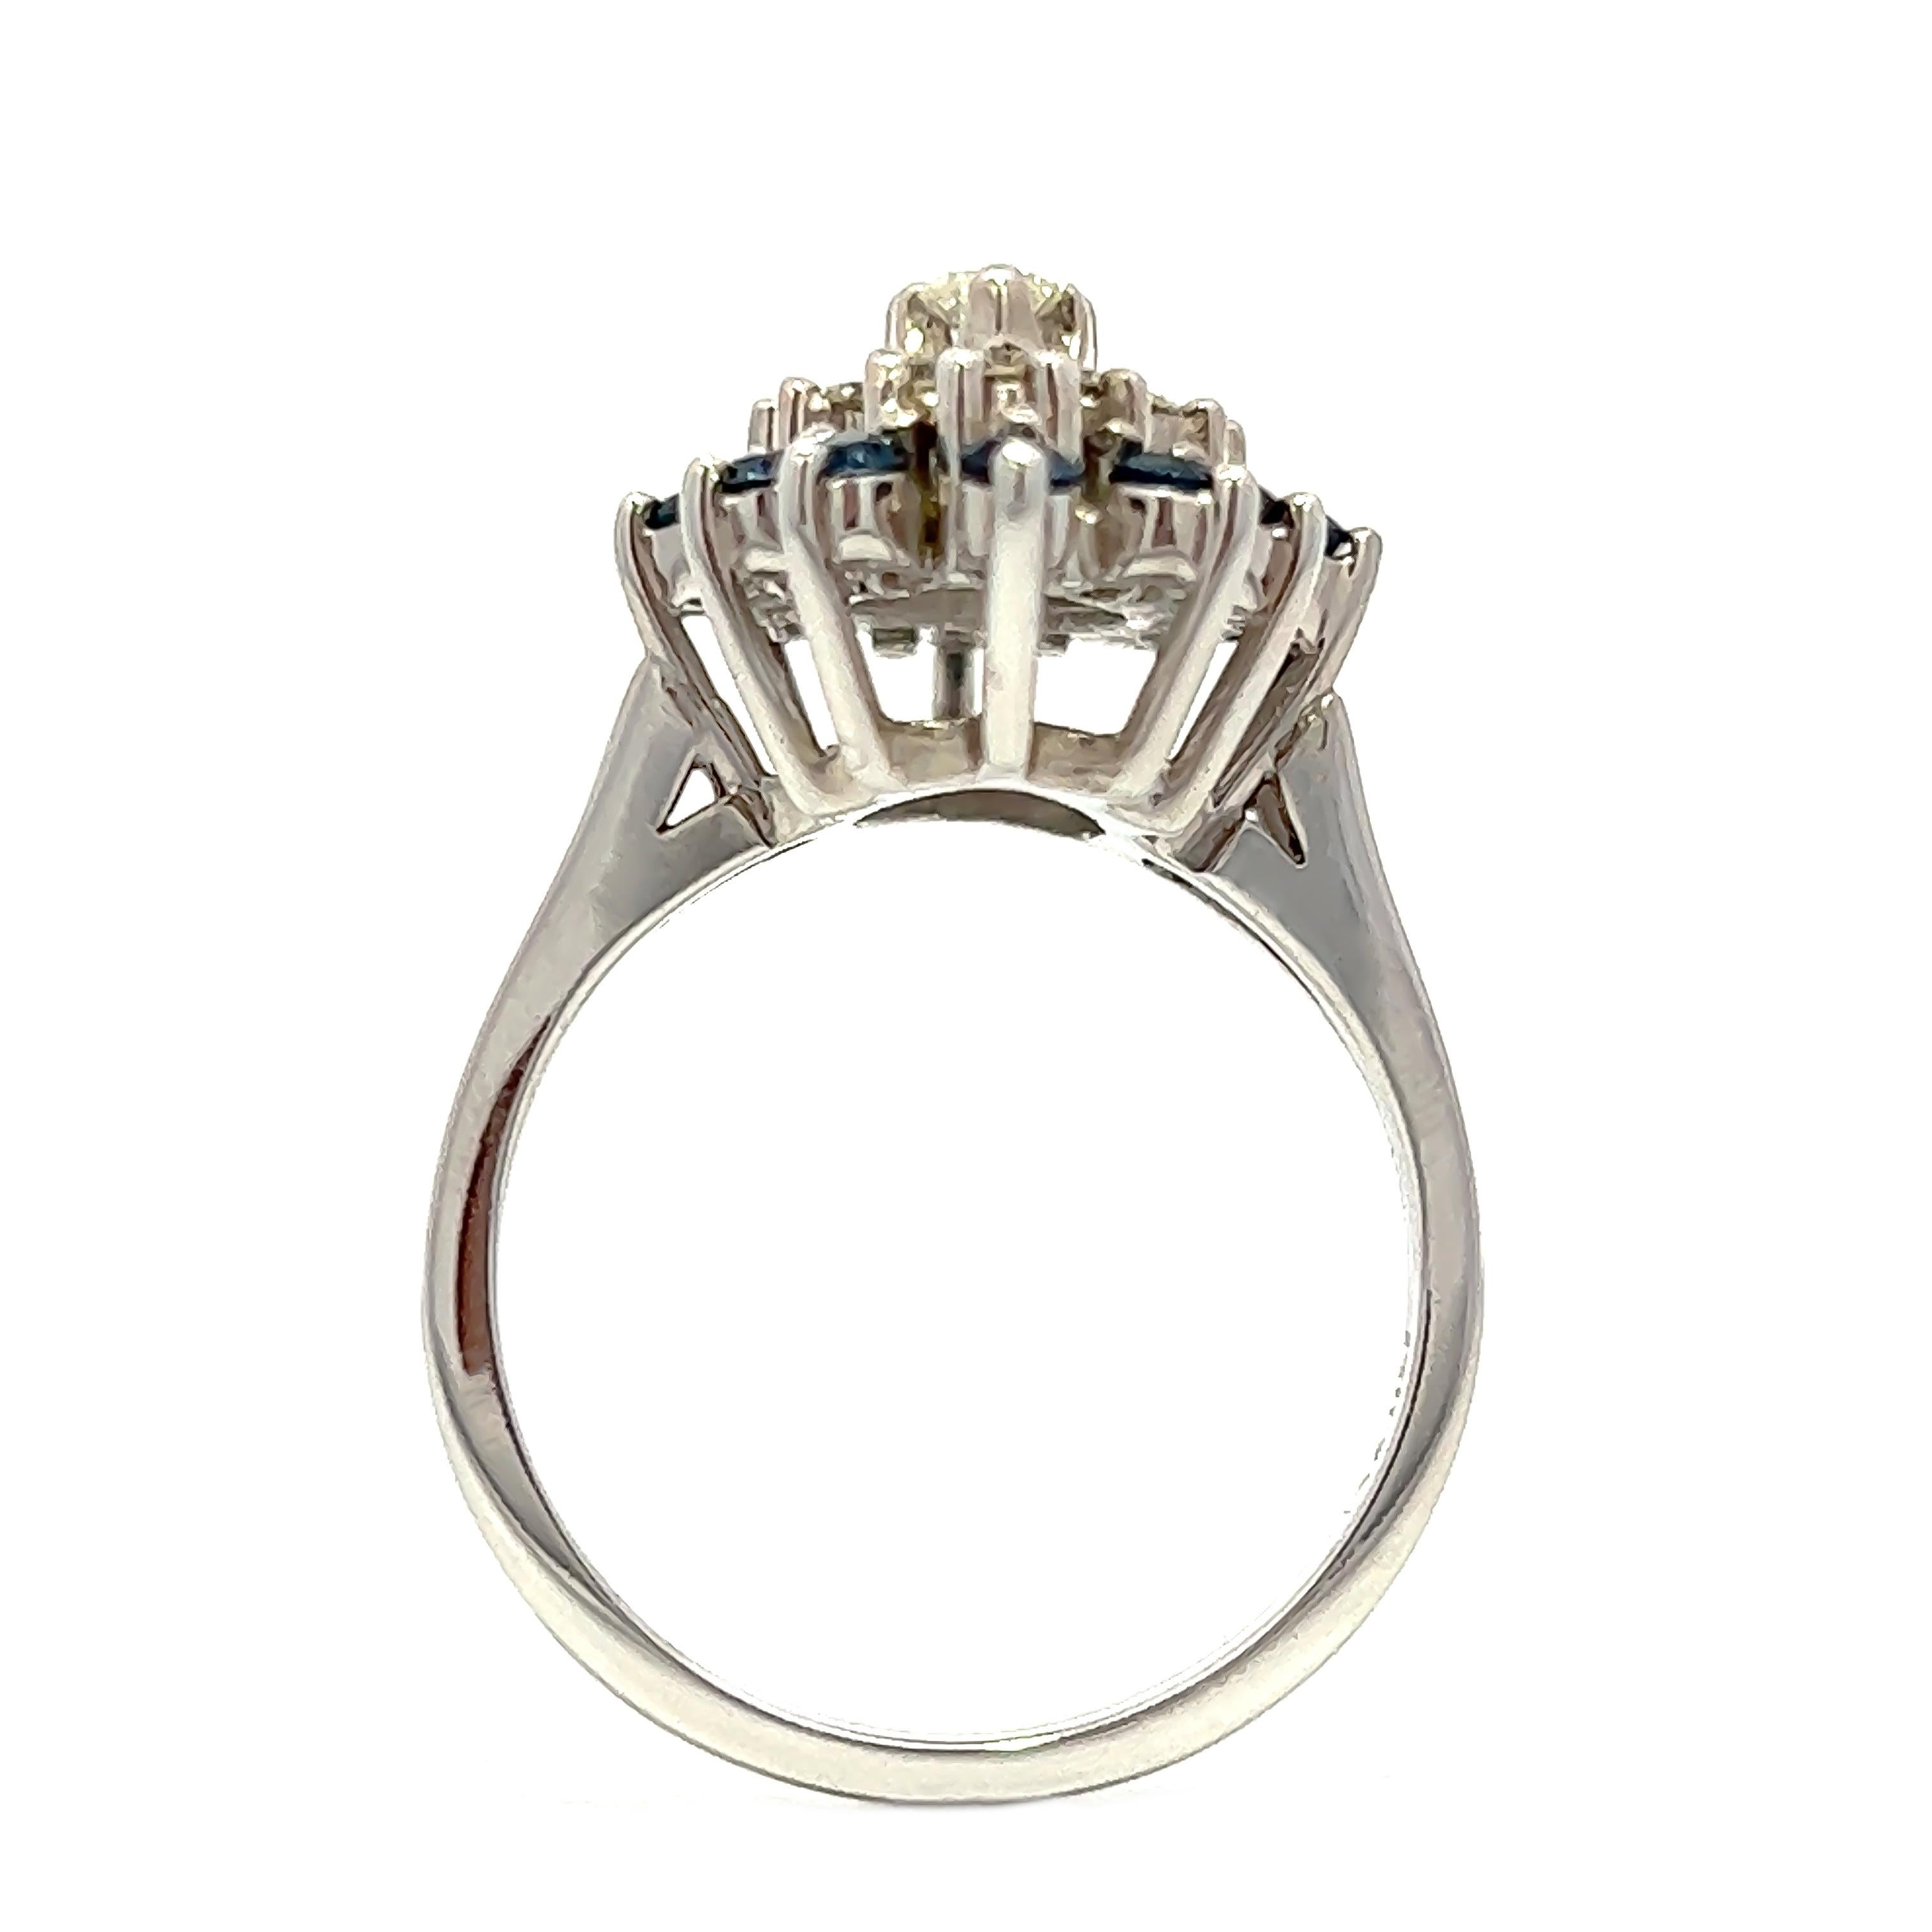 Dieser exquisite Ring ist aus hochwertigem 14-karätigem Weißgold gefertigt und besticht durch 12 atemberaubende blaue Saphire mit einem Gewicht von 0,40 ct und 13 funkelnde Diamanten mit einem Gesamtgewicht von 0,79 ct. Sie ist so konzipiert, dass